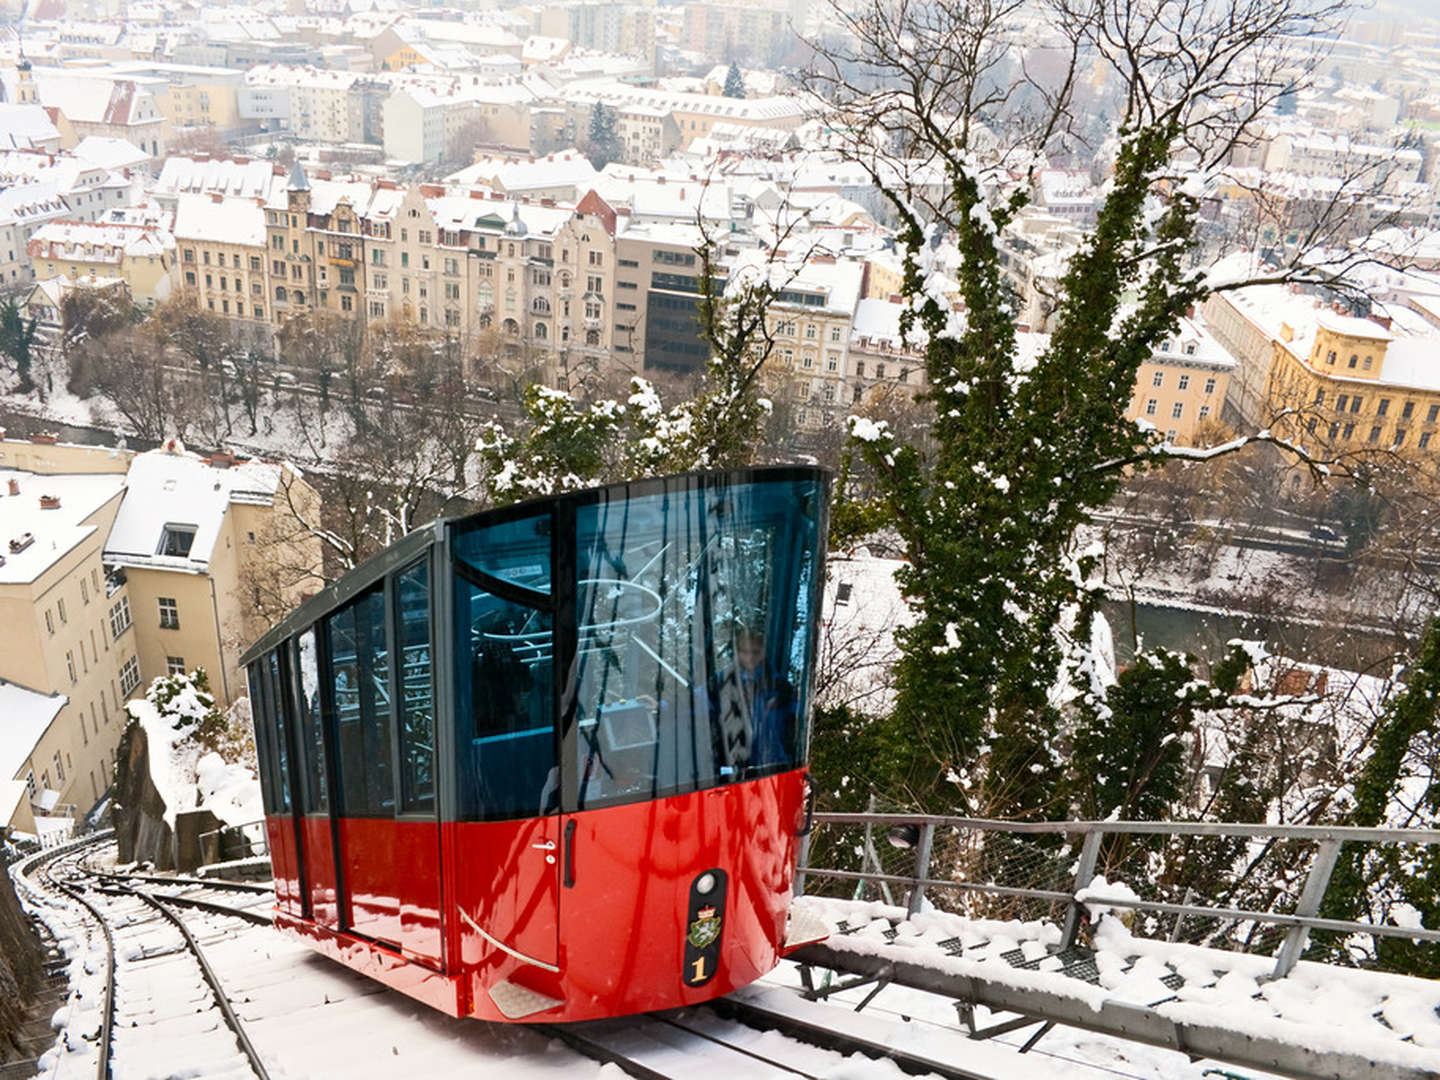 Kurzer Städtetrip nach Graz inkl. Ticket für Schlossbergbahn & Lift